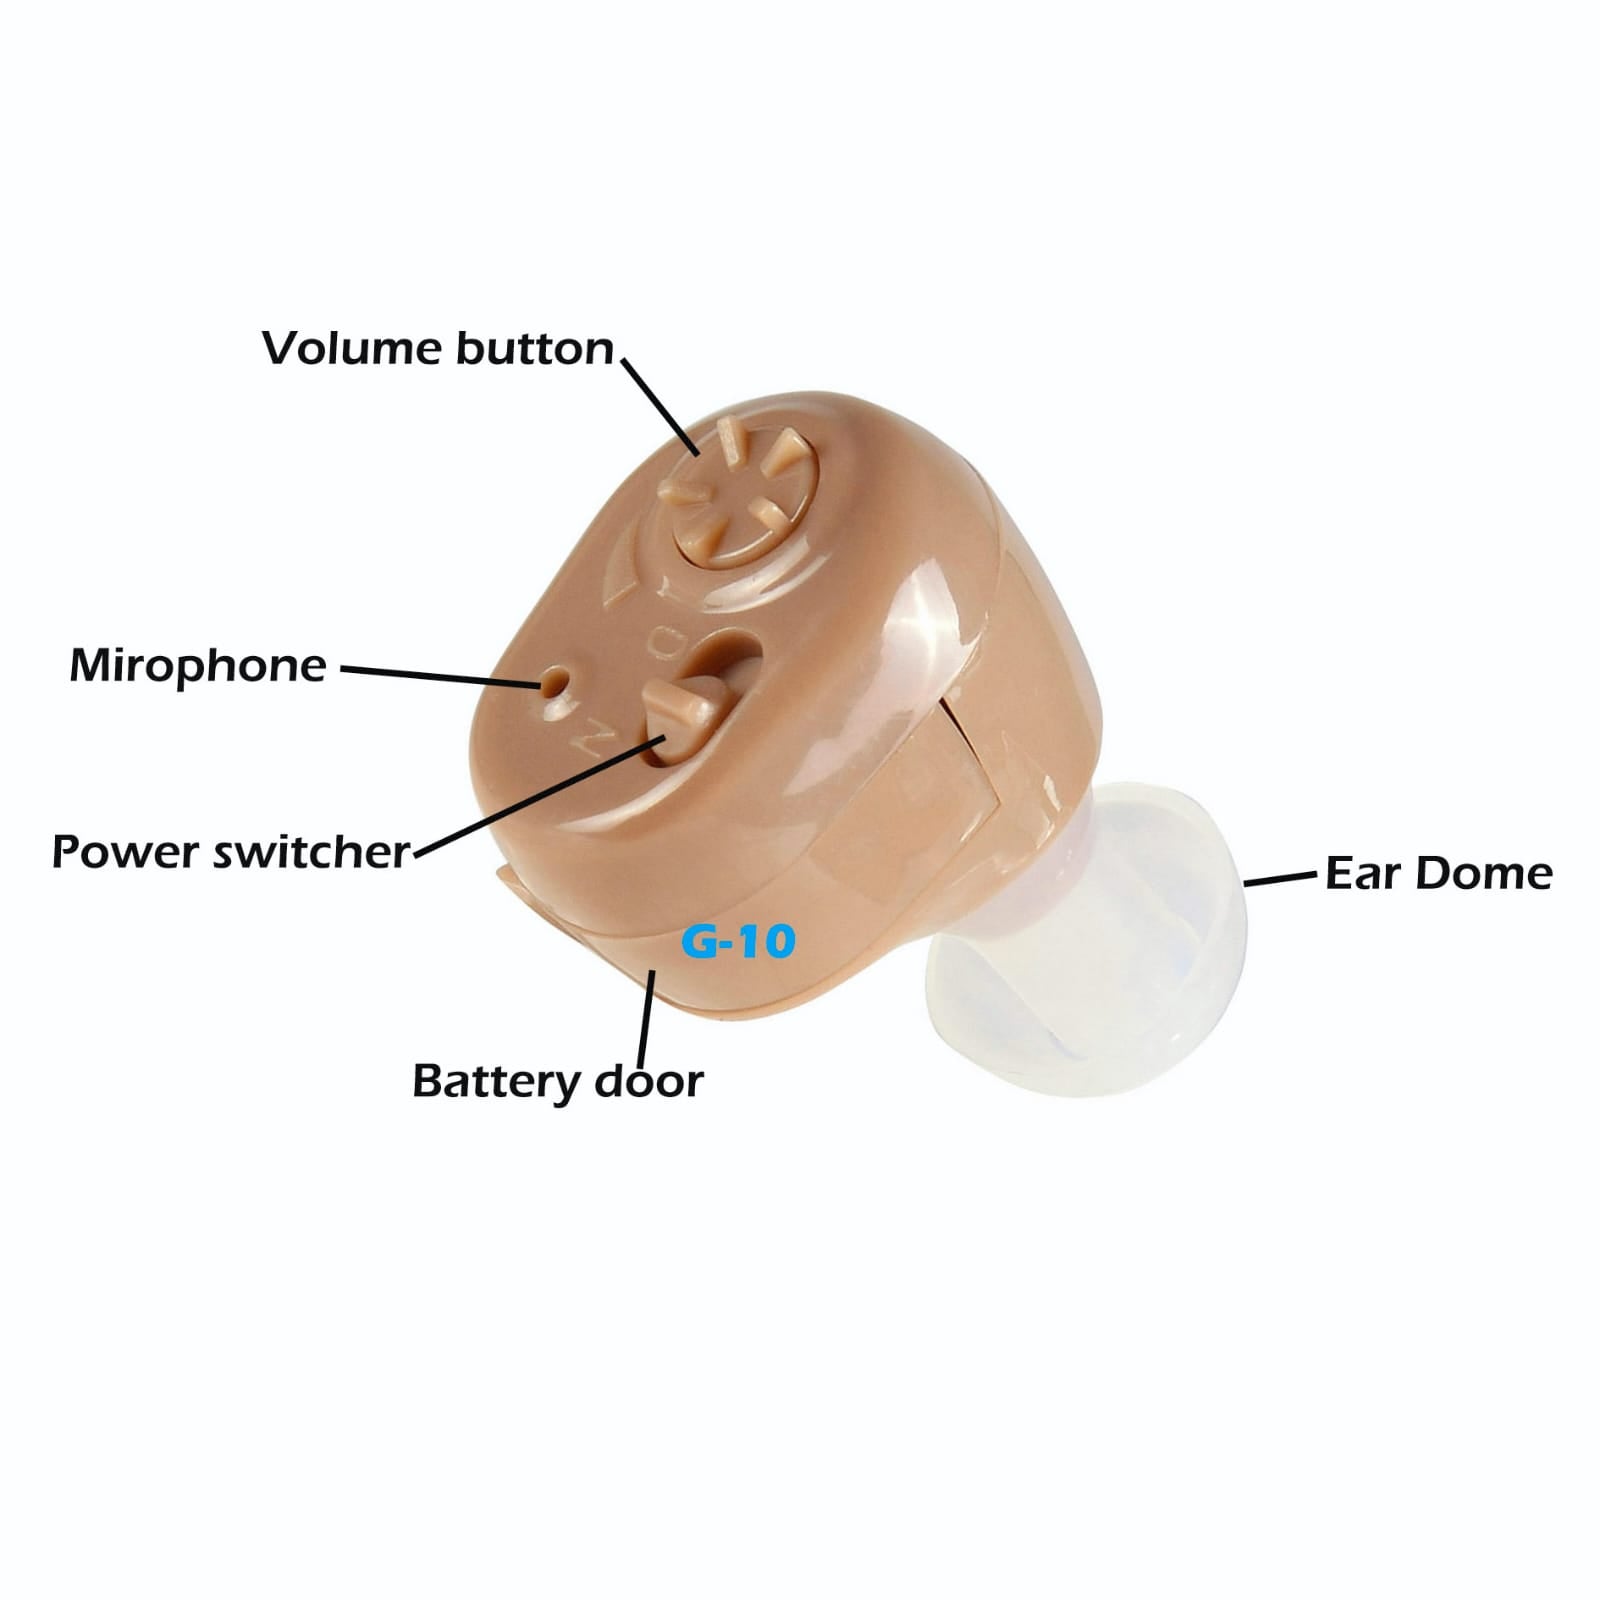 新しい予算クラスの補聴器、手頃な価格で高品質。 e-PPITE-10補聴器は米国で設計および設計されています